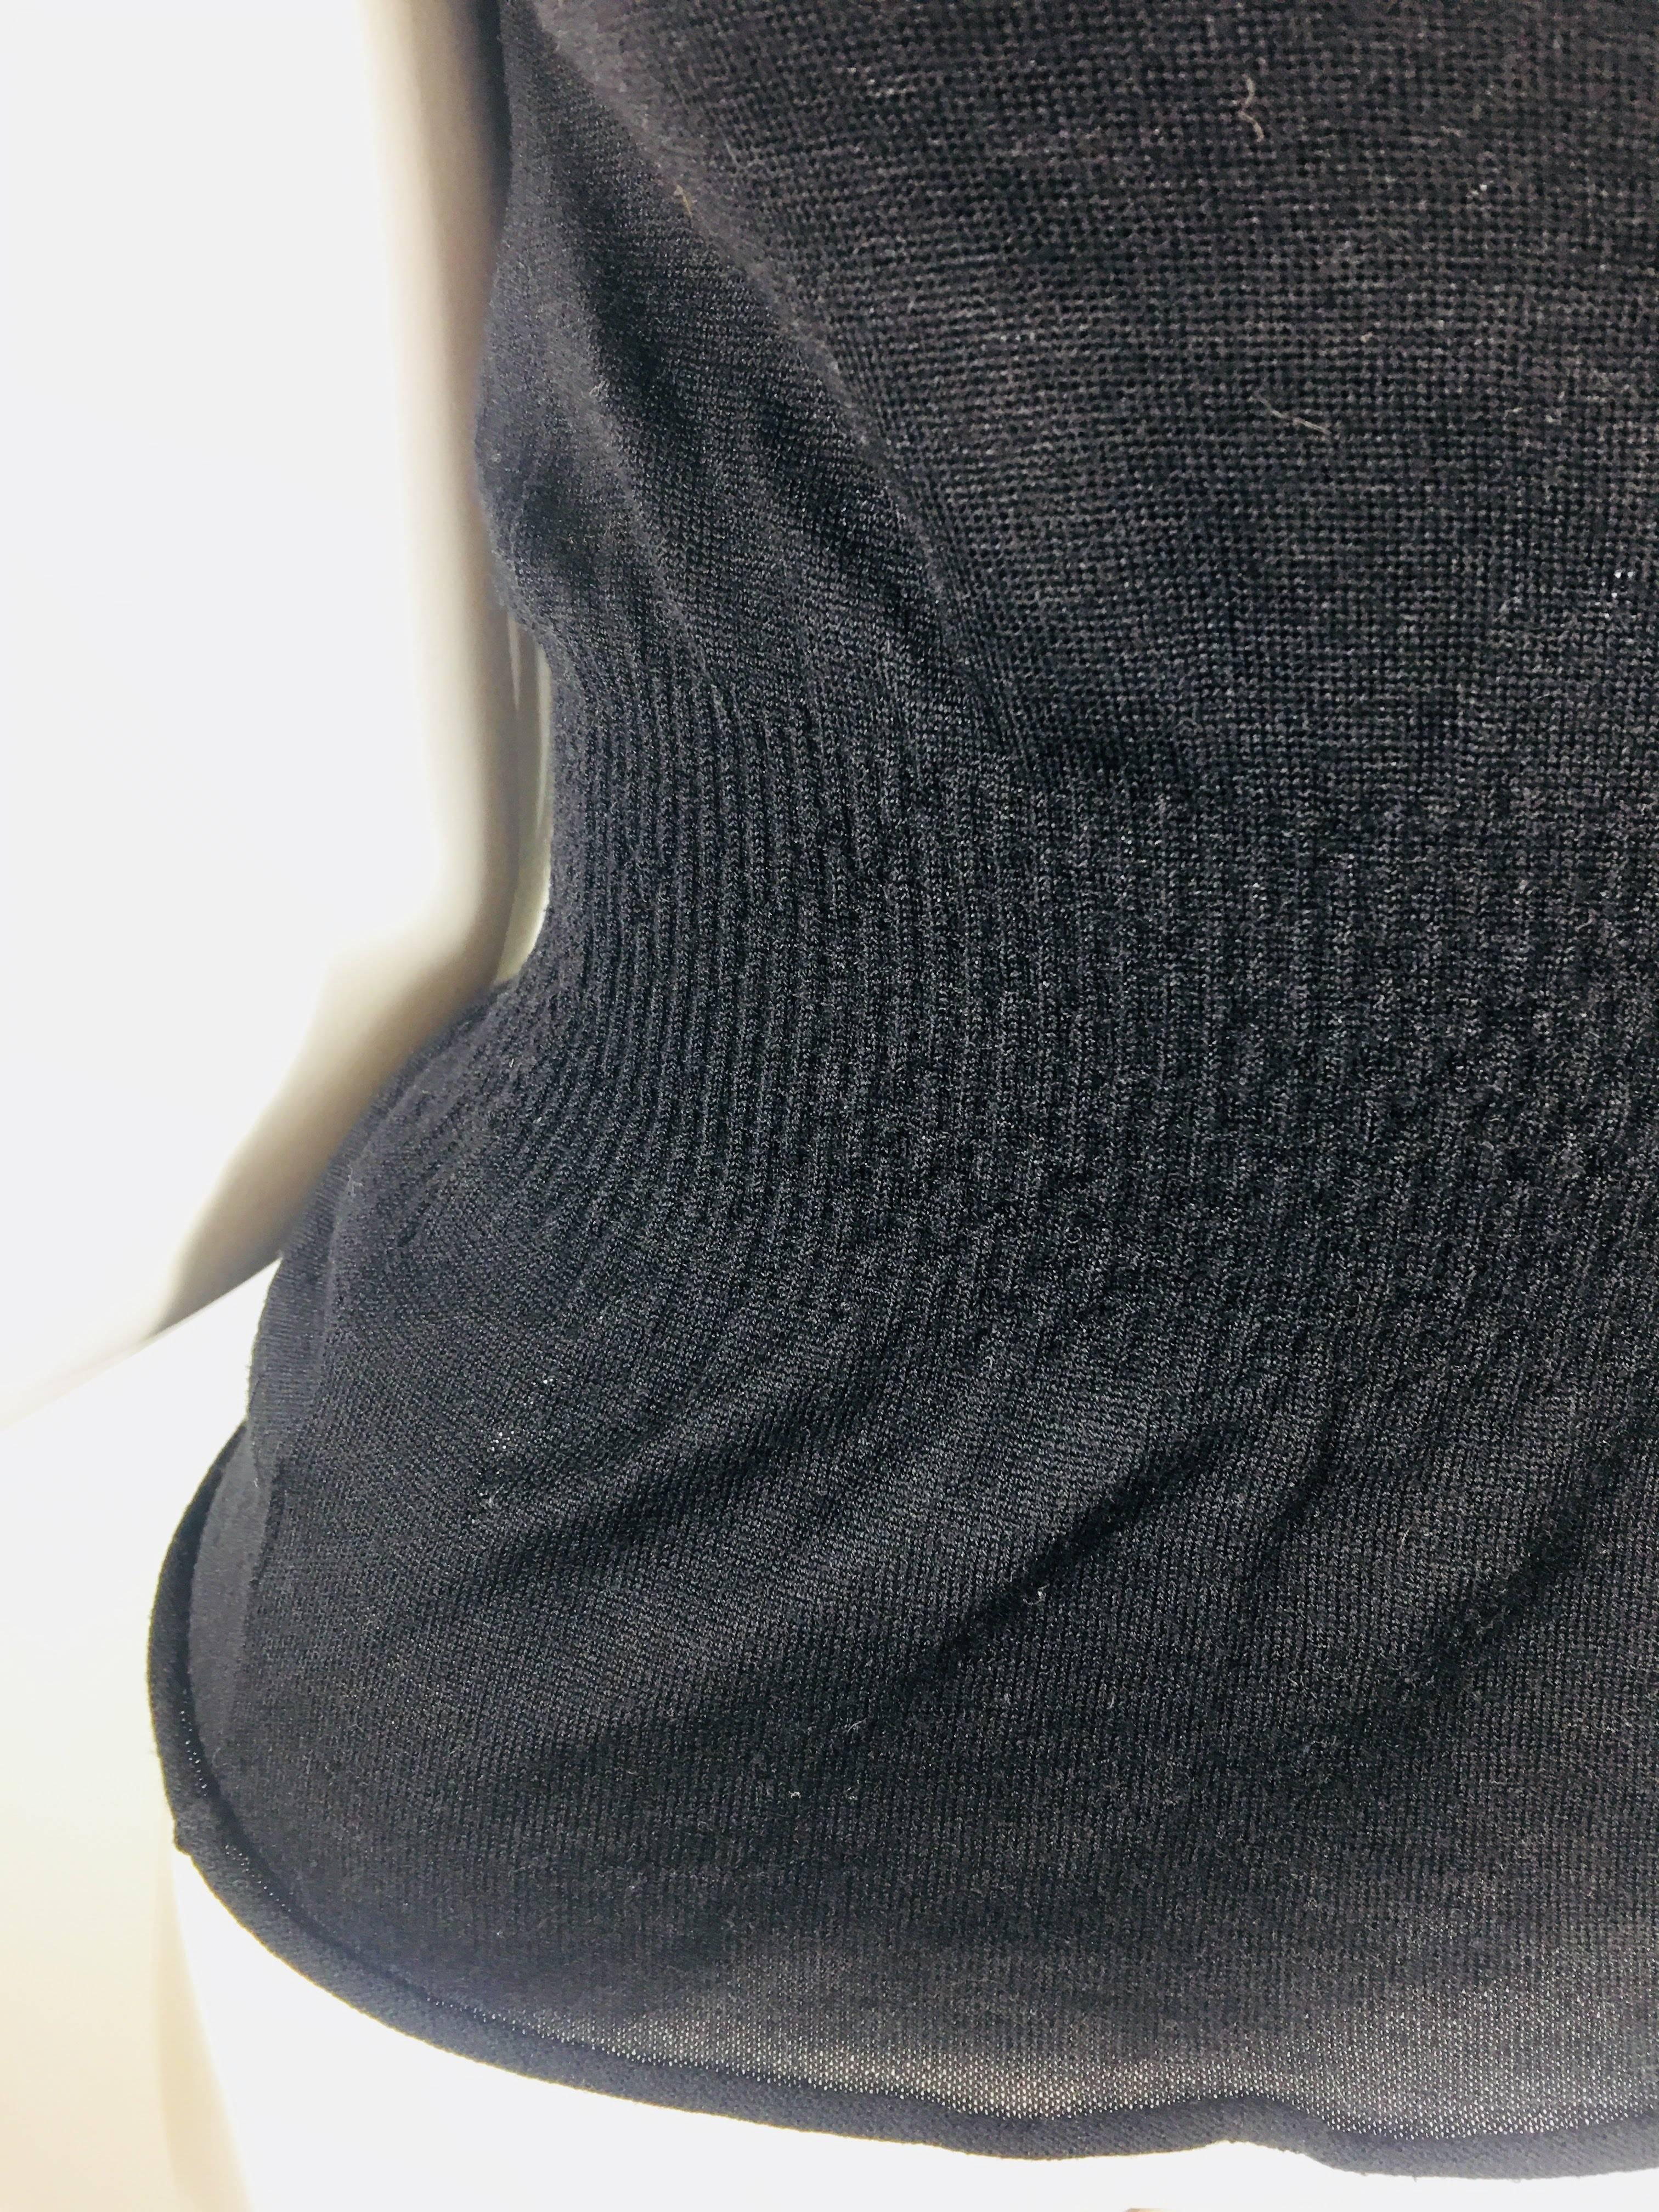 Prada Peplum Top with Cap Sleeves in Black Wool